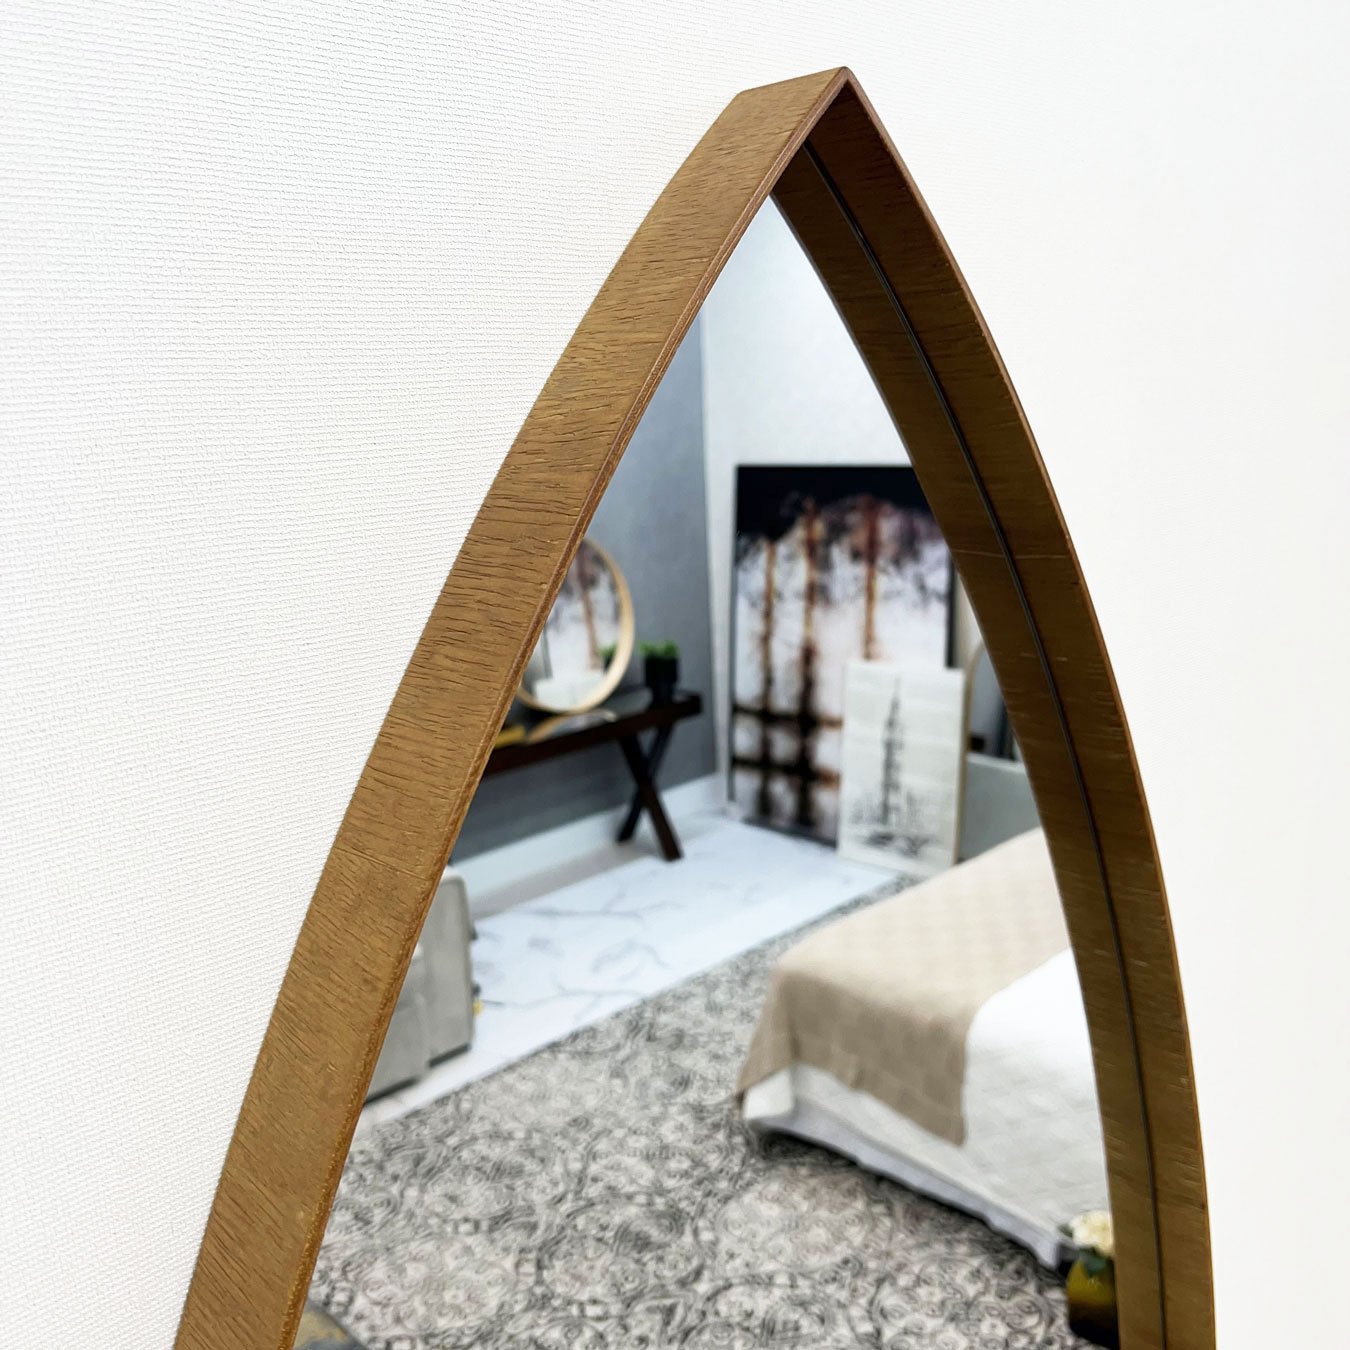 Espelho Oval Grande Sob Medida Formato Canoa com Borda Amadeirada